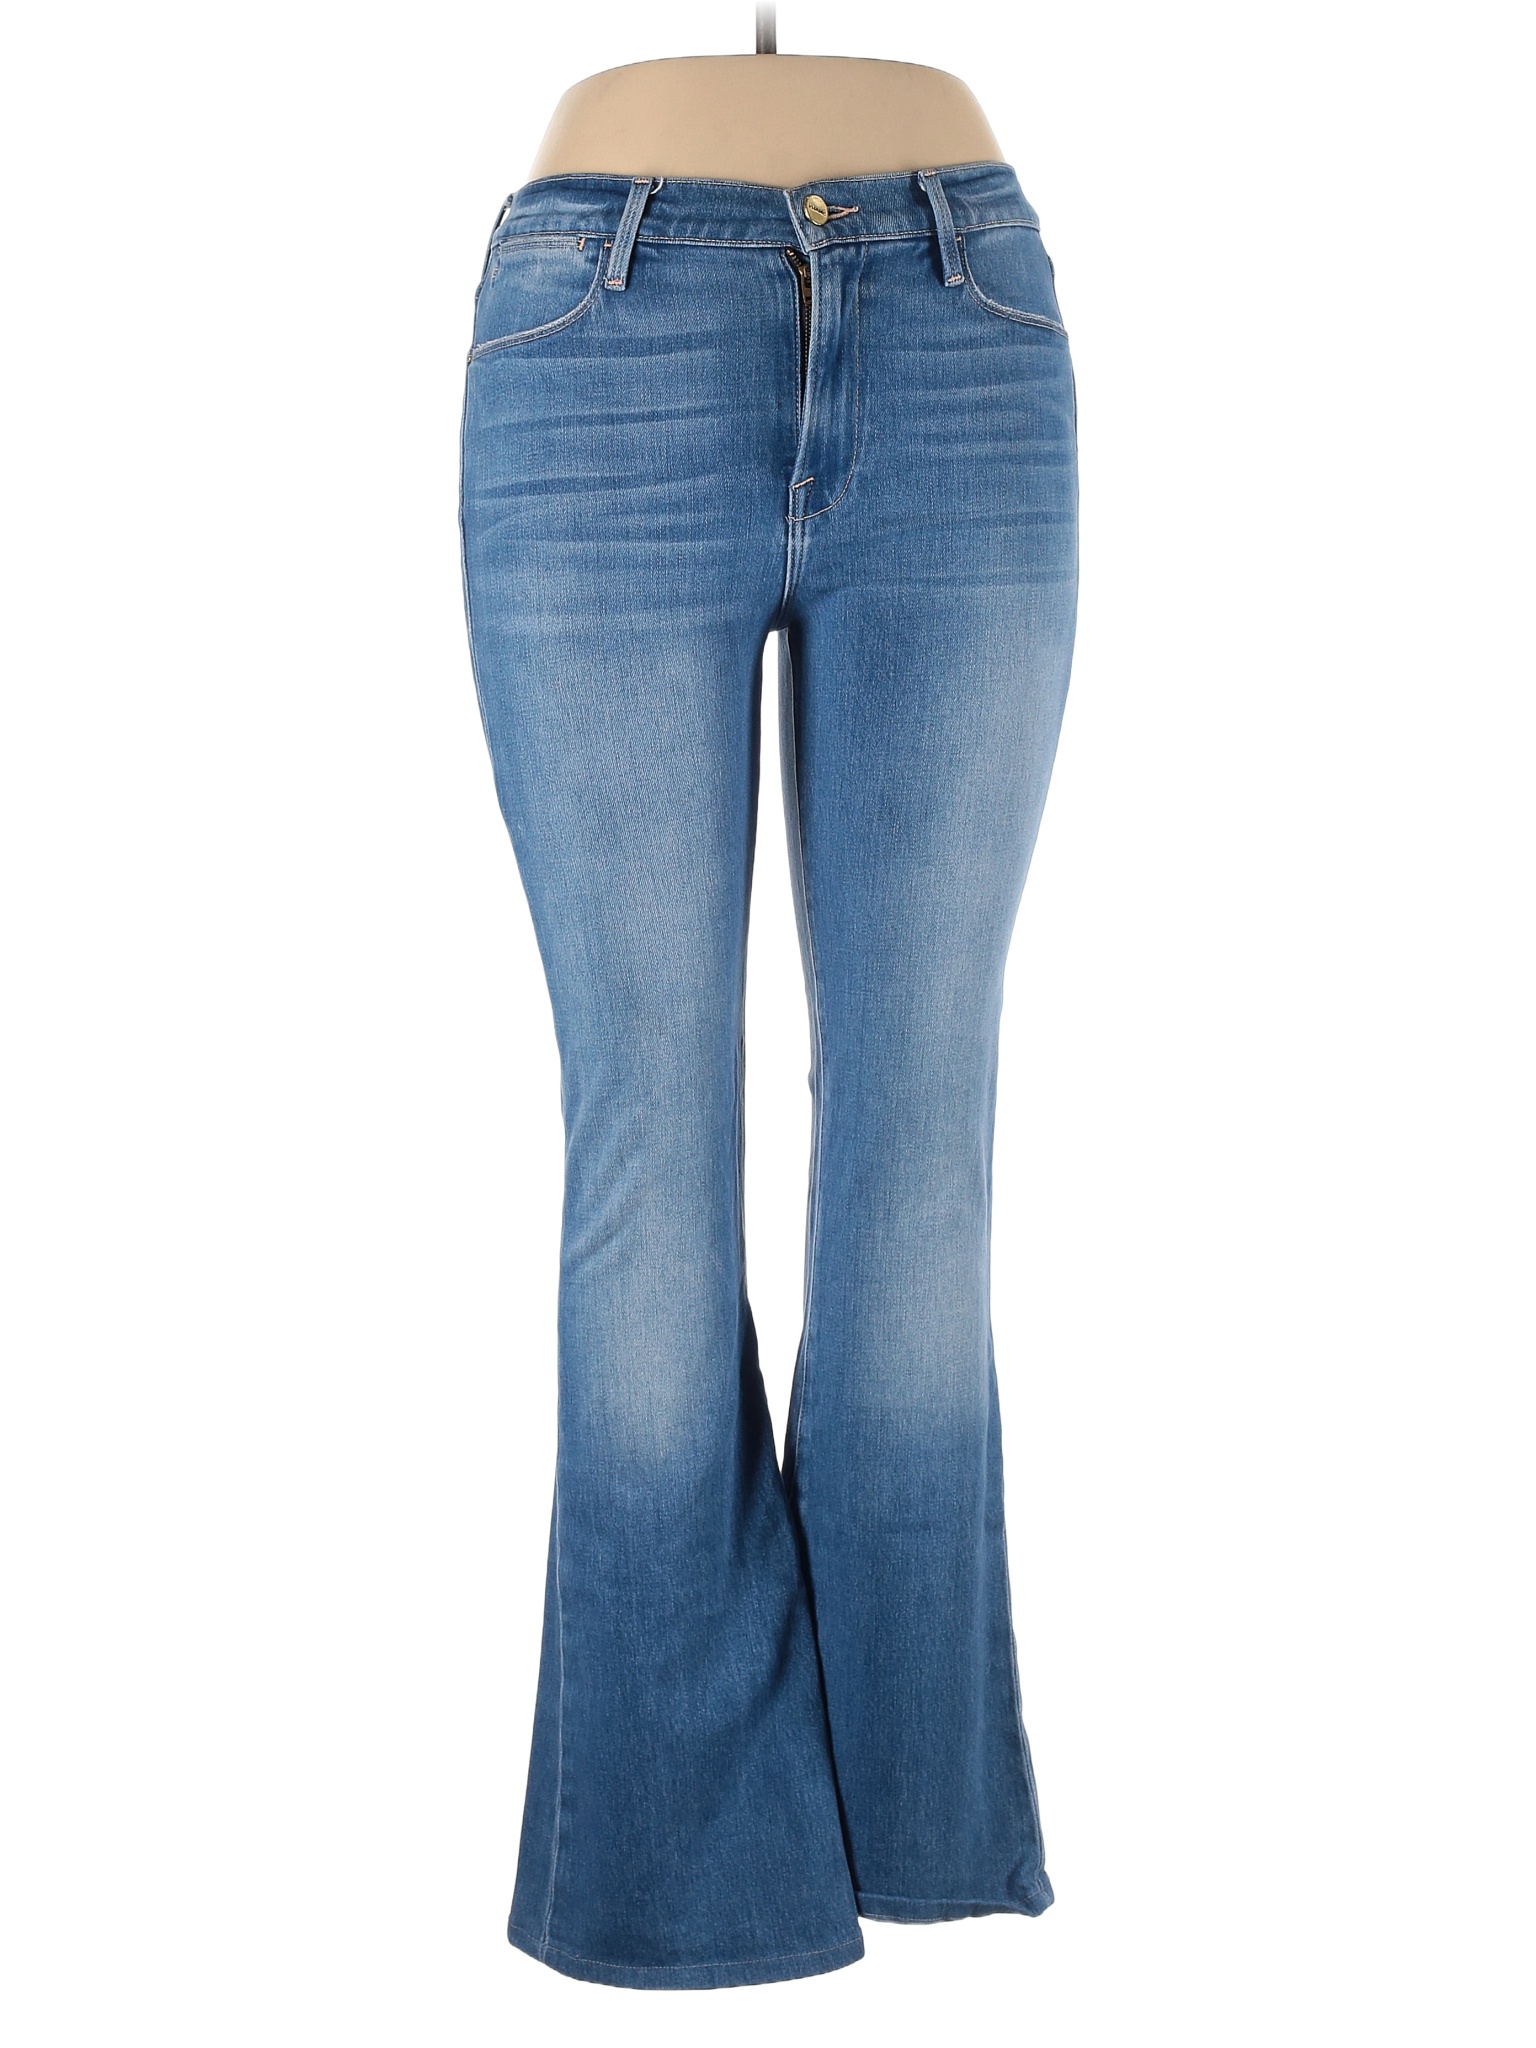 FRAME Denim Solid Blue Jeans 30 Waist - 84% off | thredUP